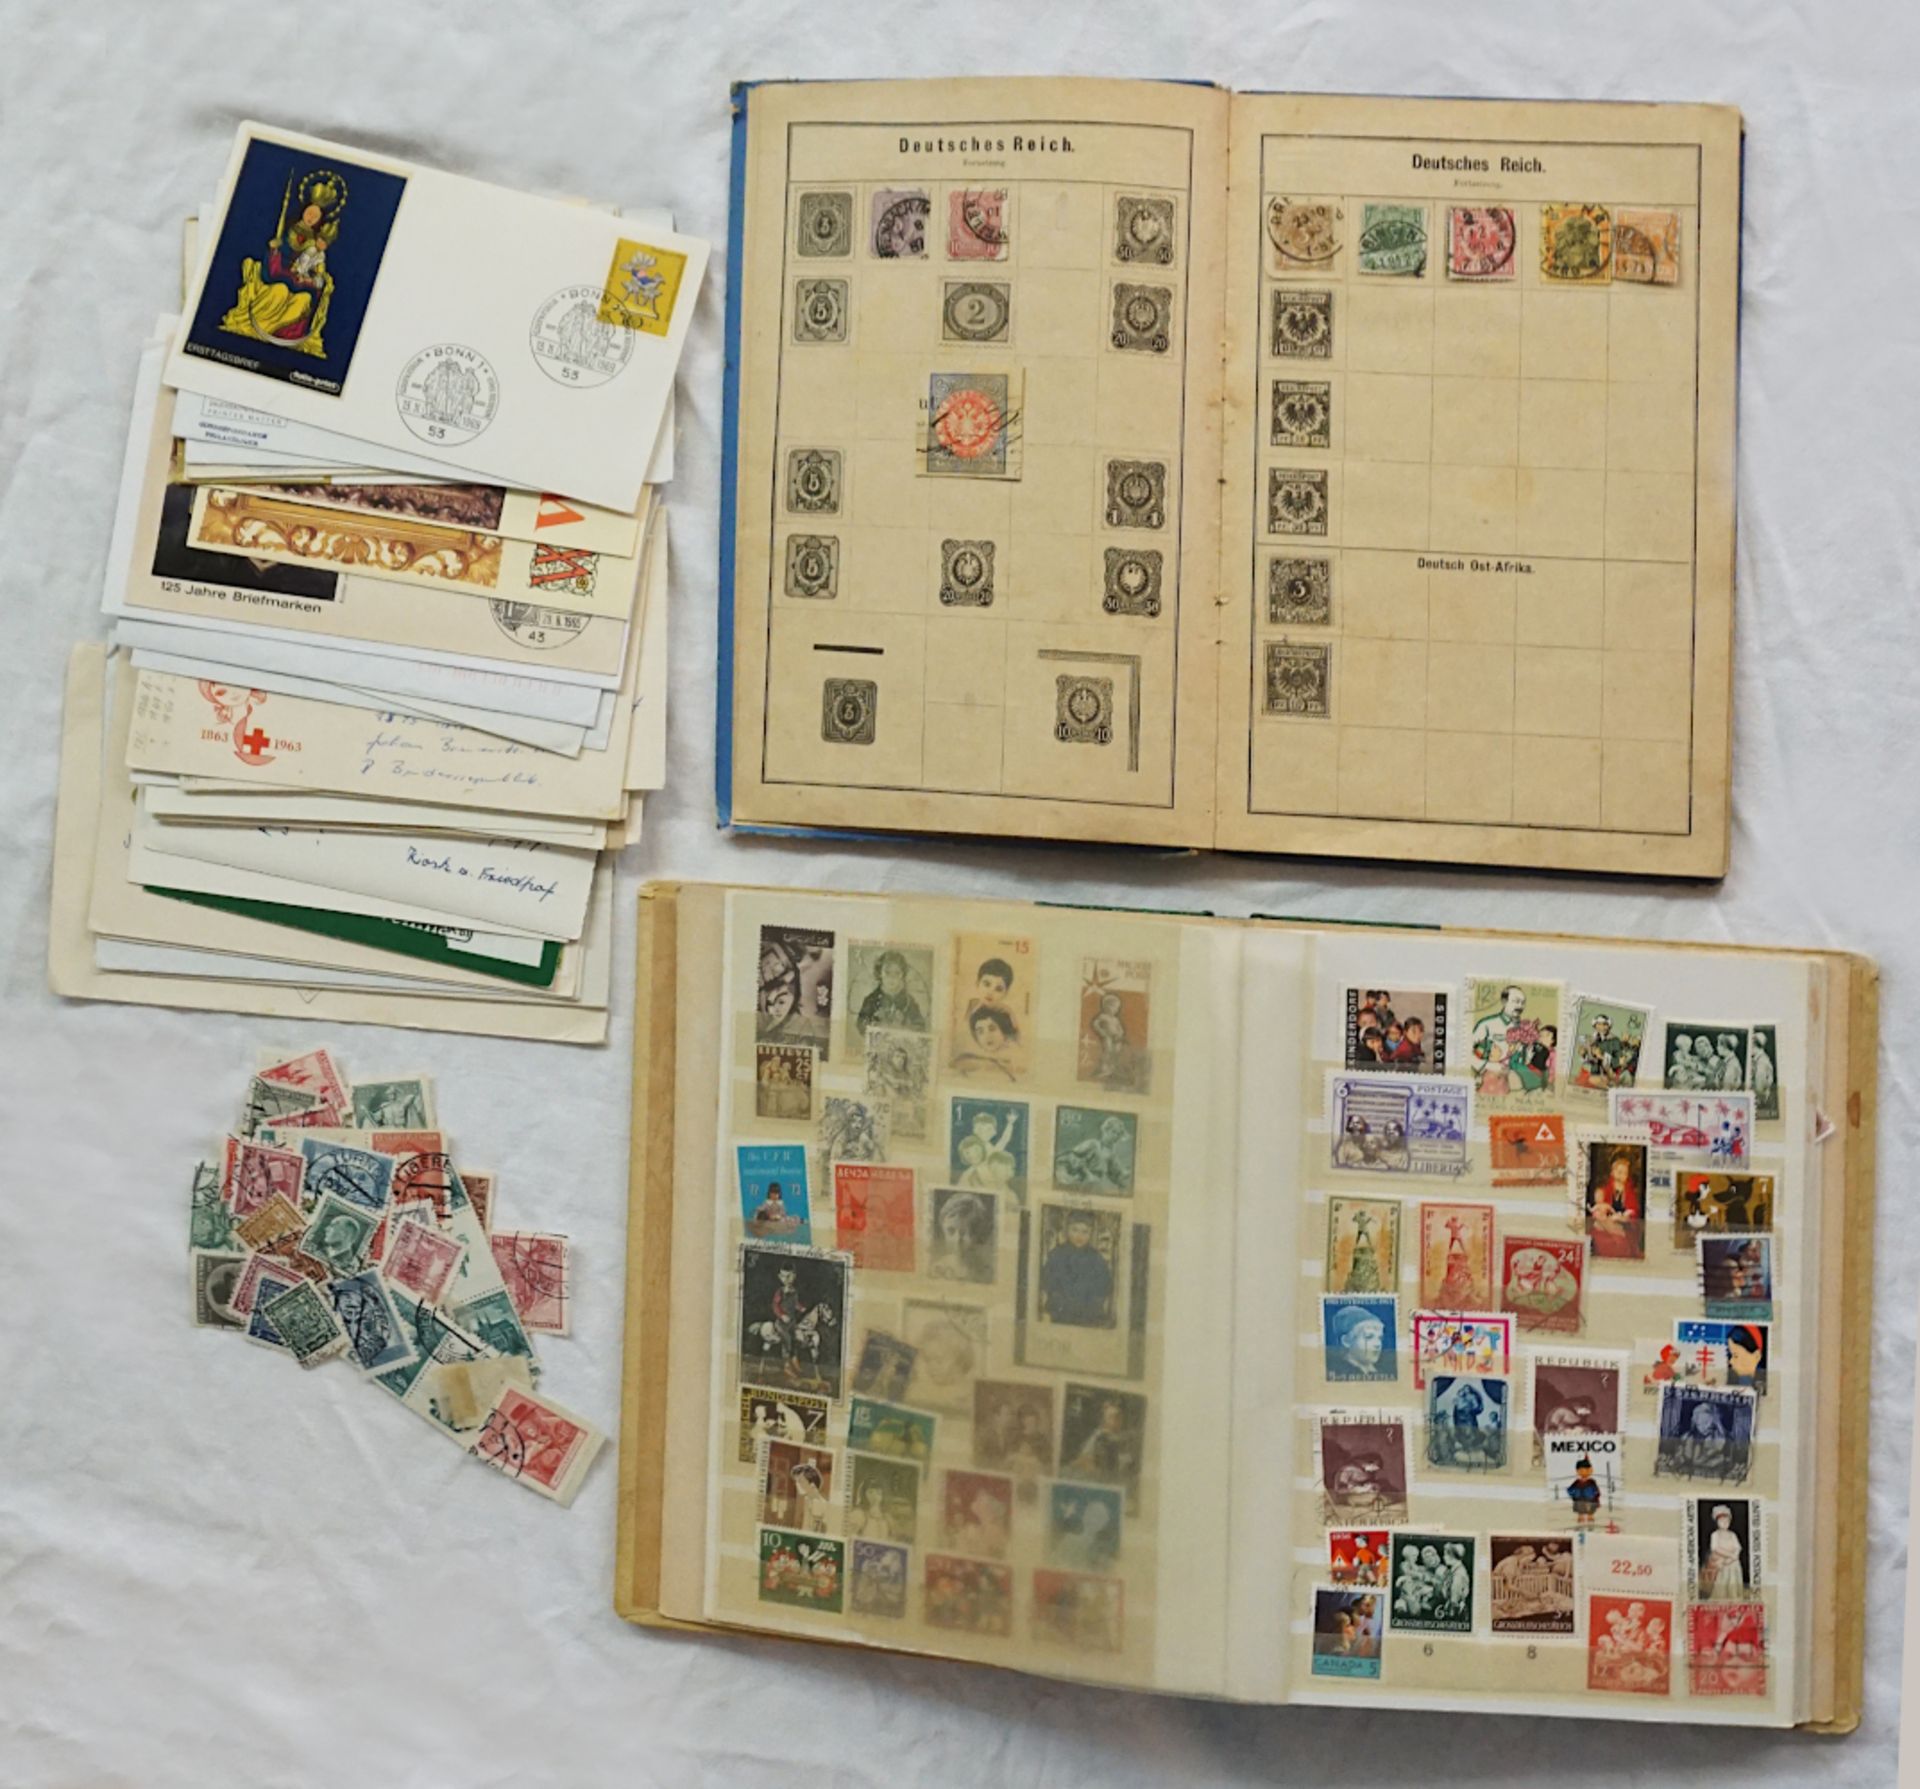 1 Konv. Briefmarken 20. Jh. in 4 Alben (1x Illustriertes Briefmarkenalbum Leipzig um 1900)/lose in T